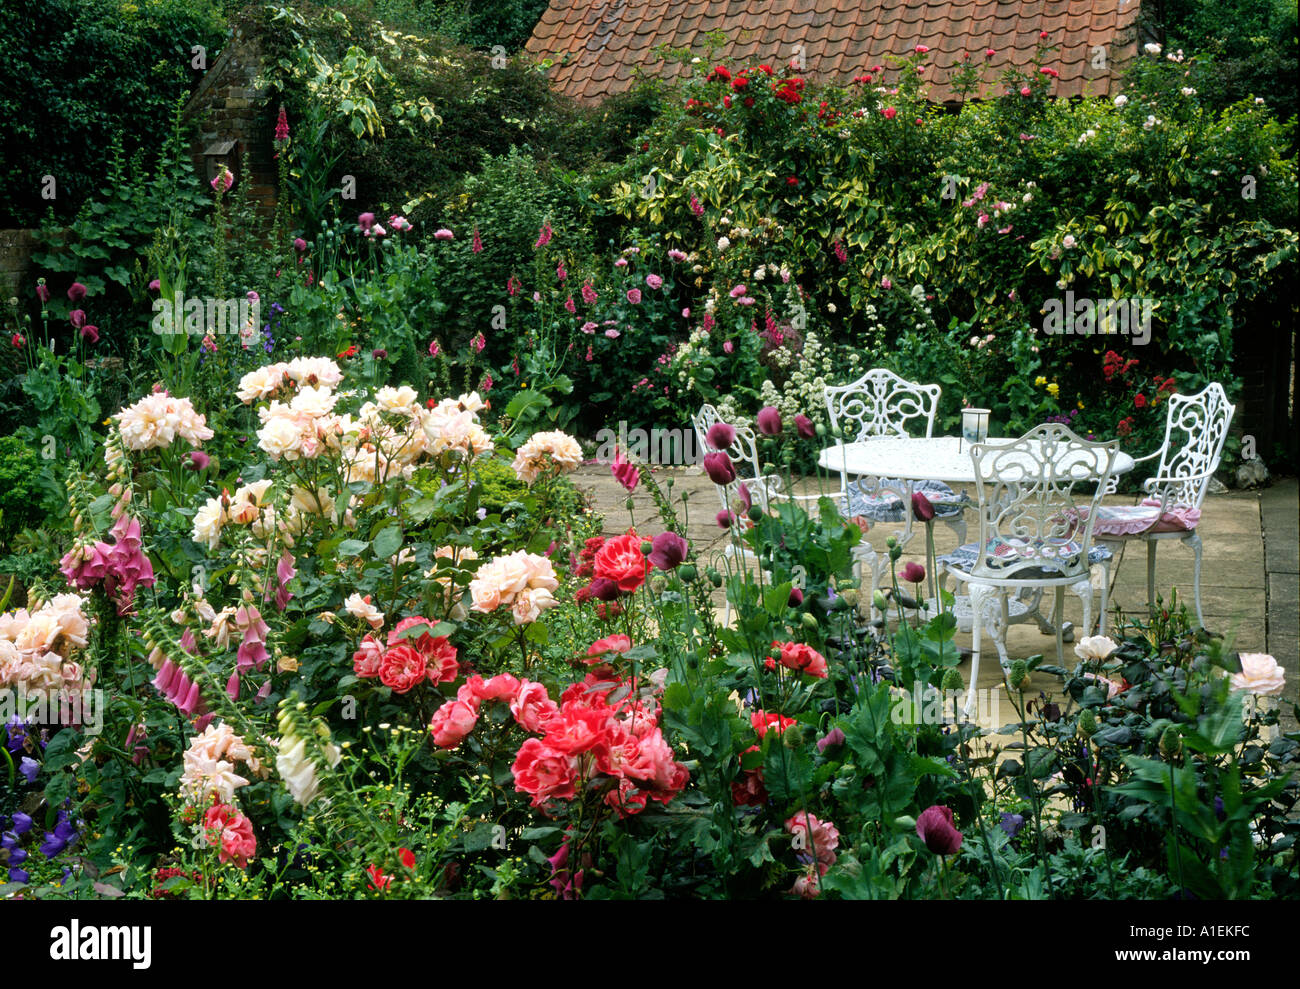 Jardin de roses et d'un patio Meubles de jardin plantes fleurs roses blanches roses blanches rouge chaises solitude tranquille et relaxant de la paix Banque D'Images